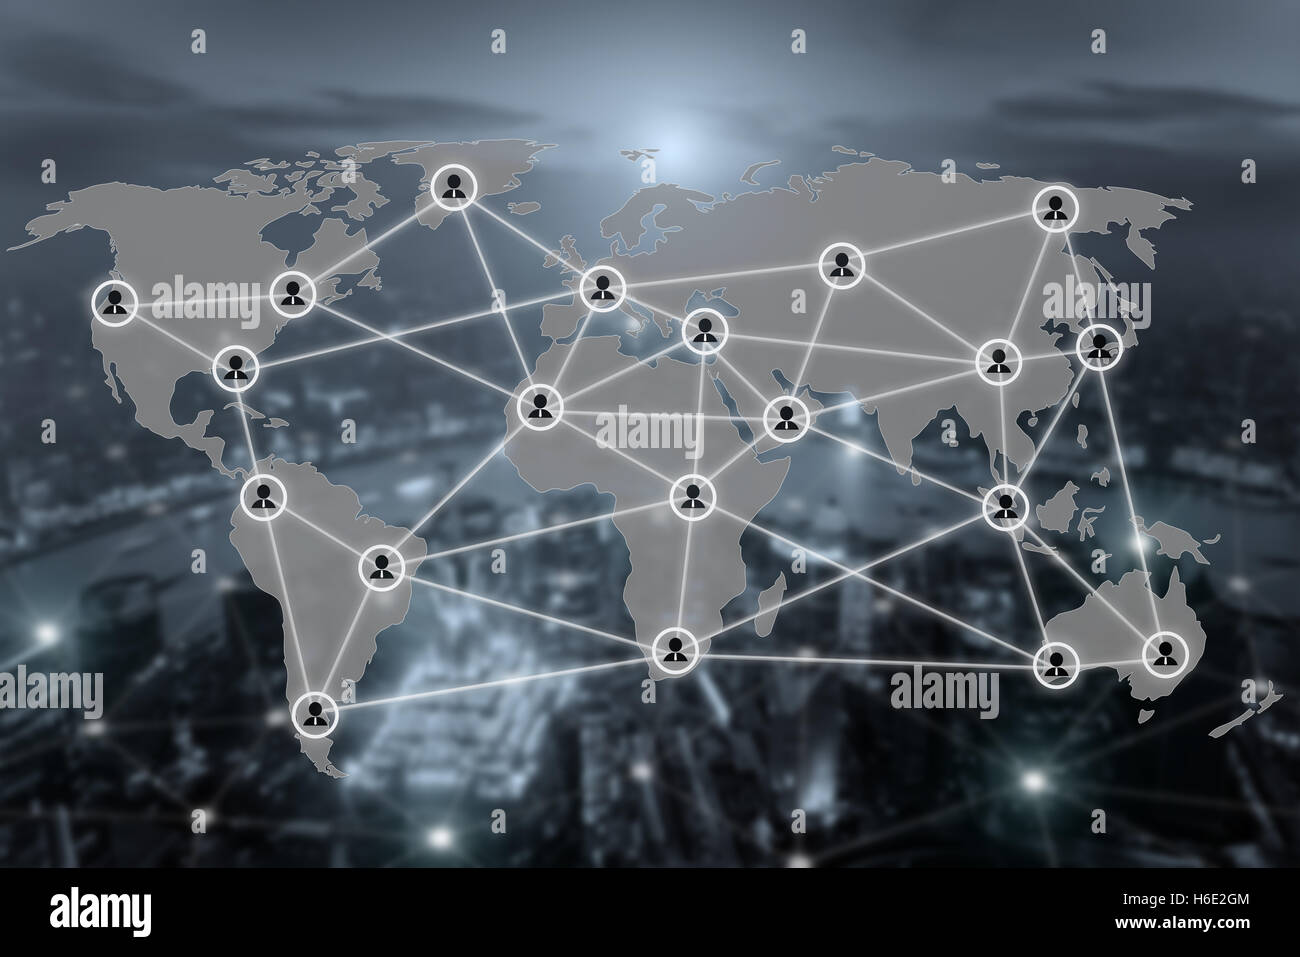 Welt Karte und Verbindung sozialer Kommunikation Netzwerksymbol mit Blurr Stadt im Hintergrund. Soziale Netzwerk-Konzept. Stockfoto